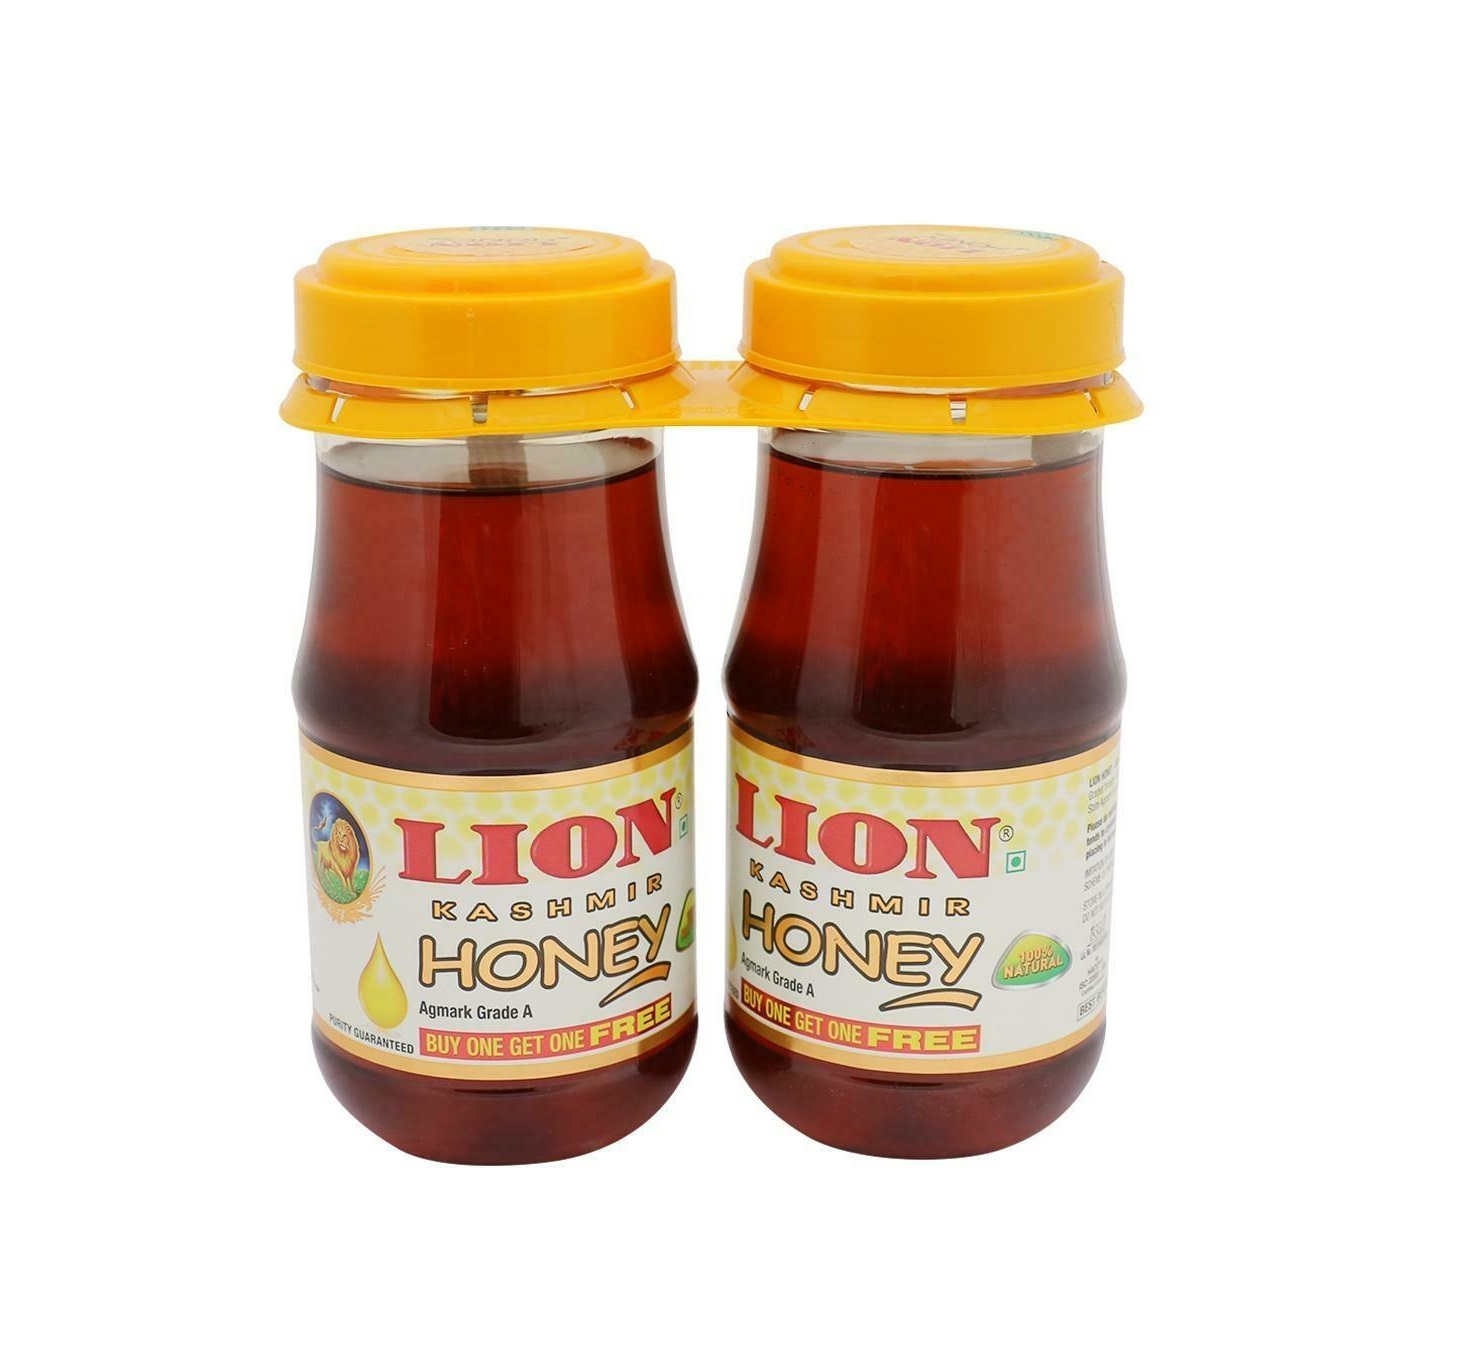 Lion Kashmir Honey 1 kg (Buy 1 Get 1)